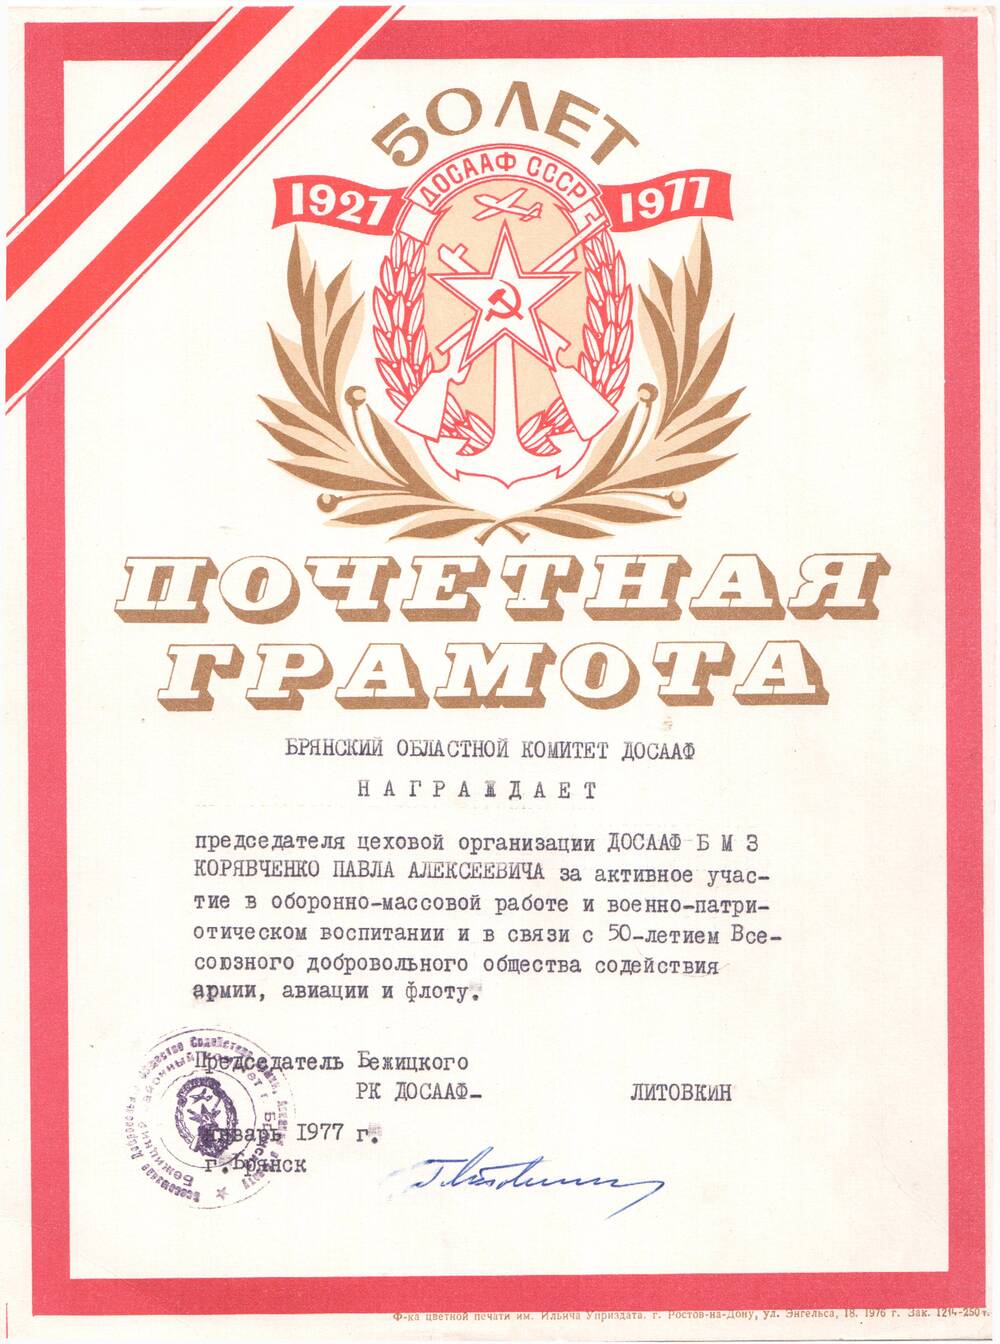 Почетная грамота П.А. Корявченкову за активное участие в оборонно-массовой работе и в связи с 50-летием ДОСААФ, январь 1977 г.